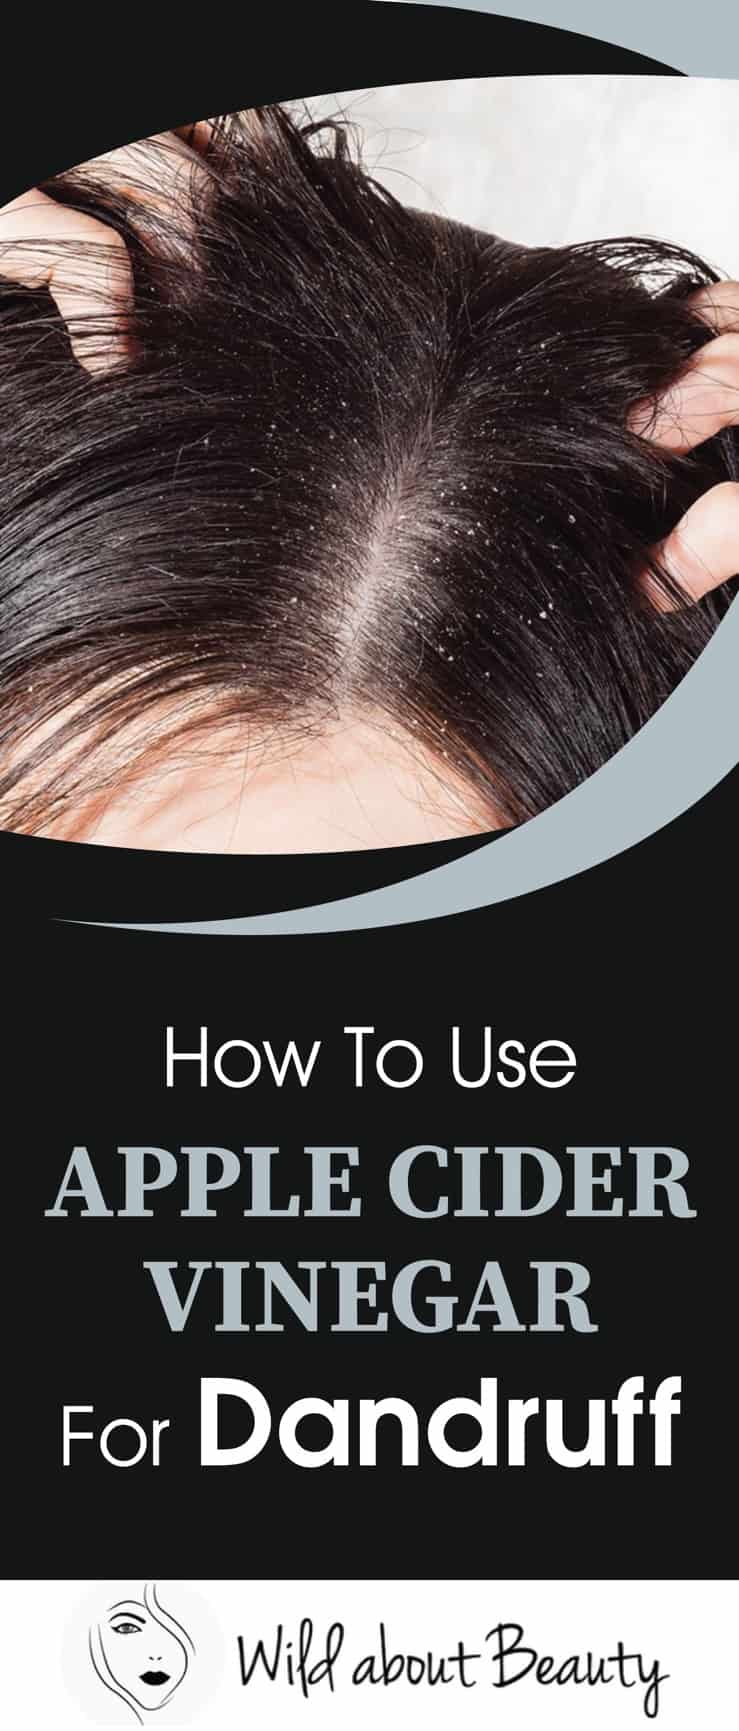 How to Use Apple Cider Vinegar for Dandruff